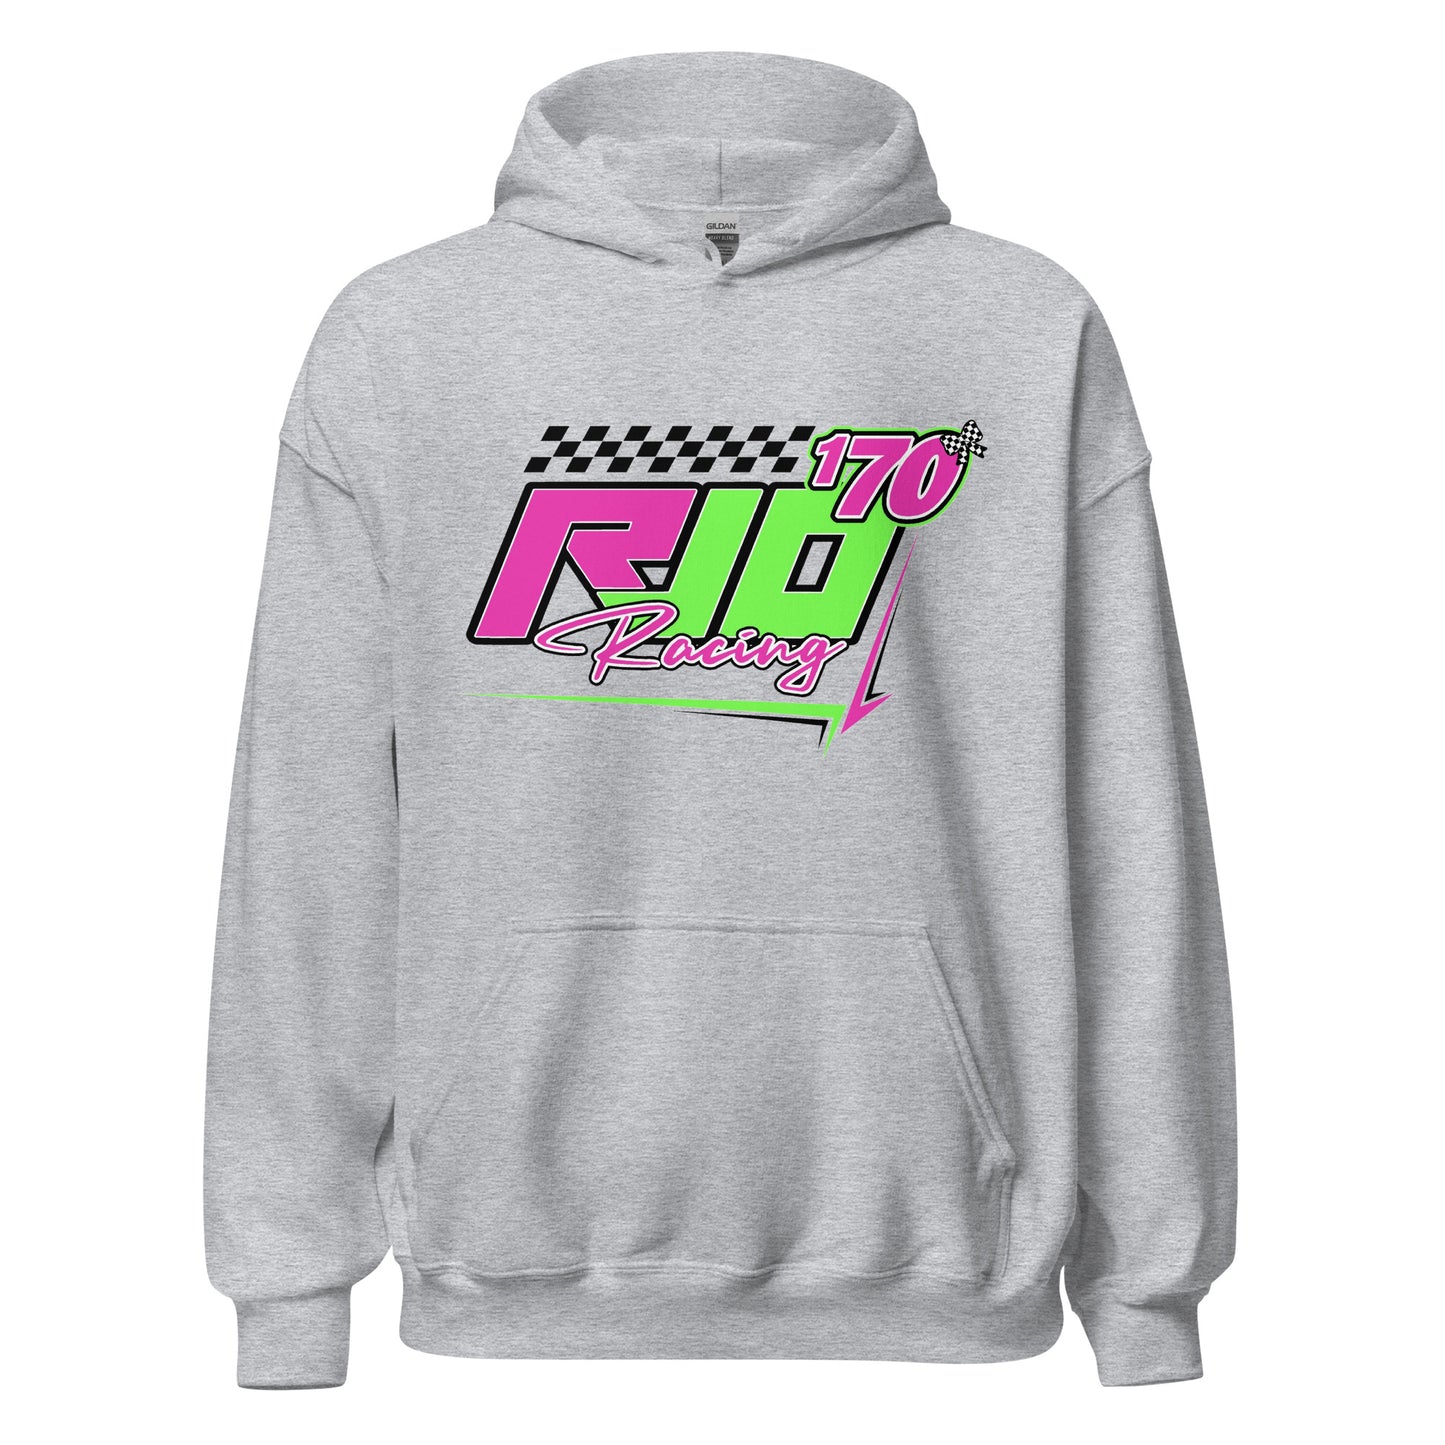 RJo Racing Cartoon Adult Hoodie Sweatshirt